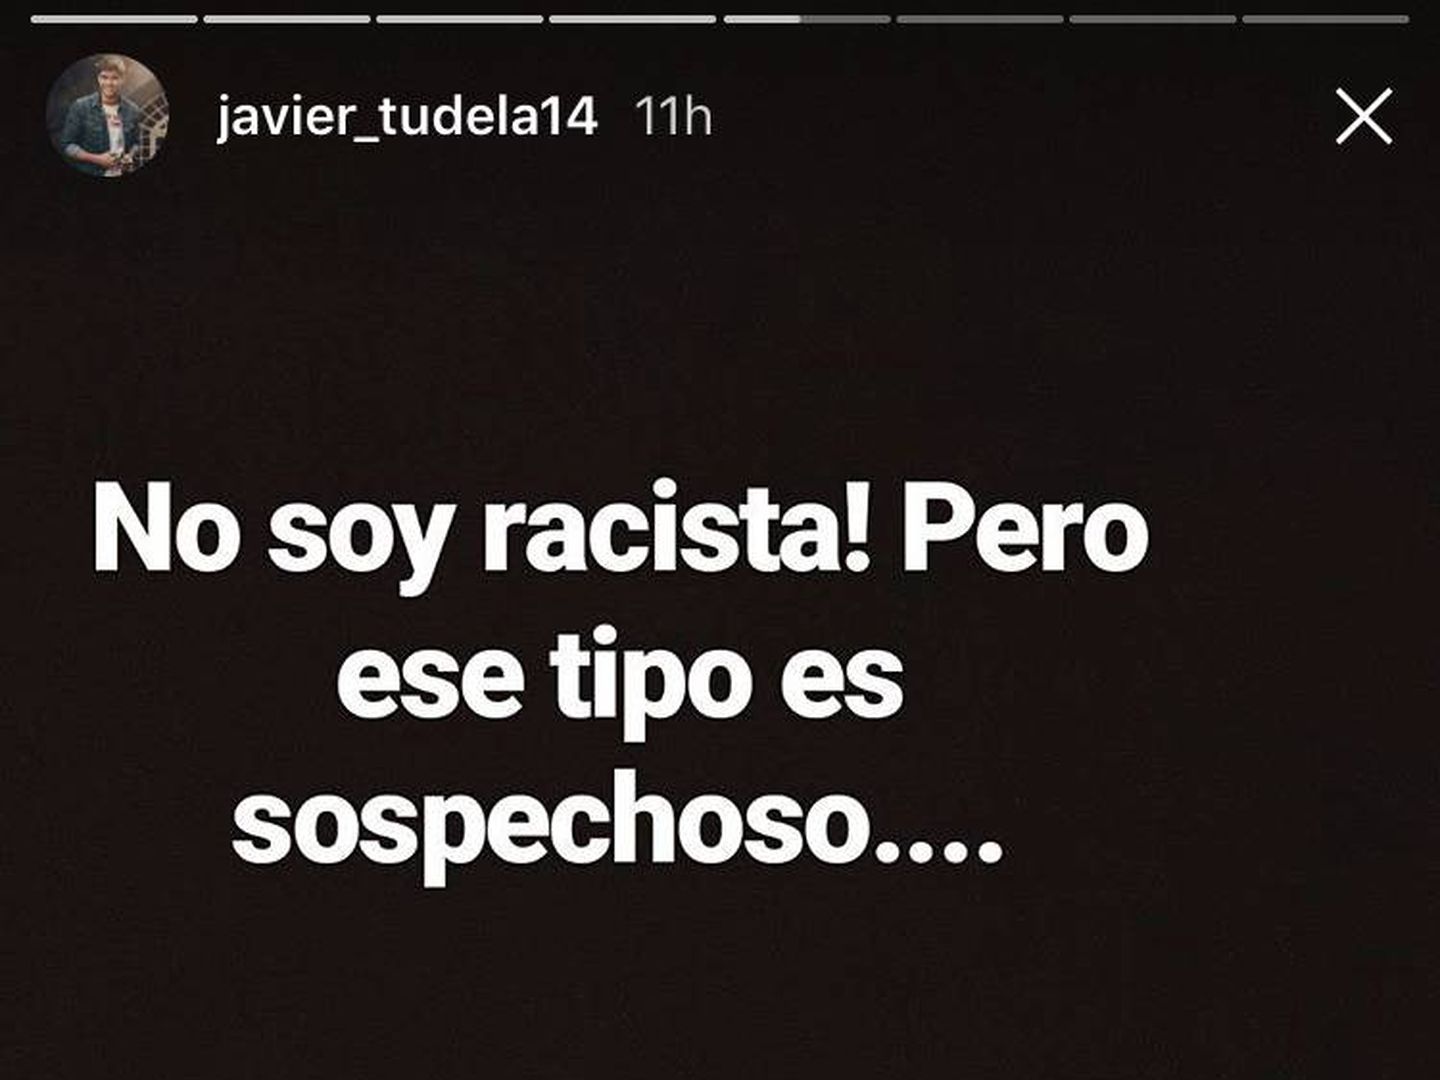 Respuesta de Javier Tudela.